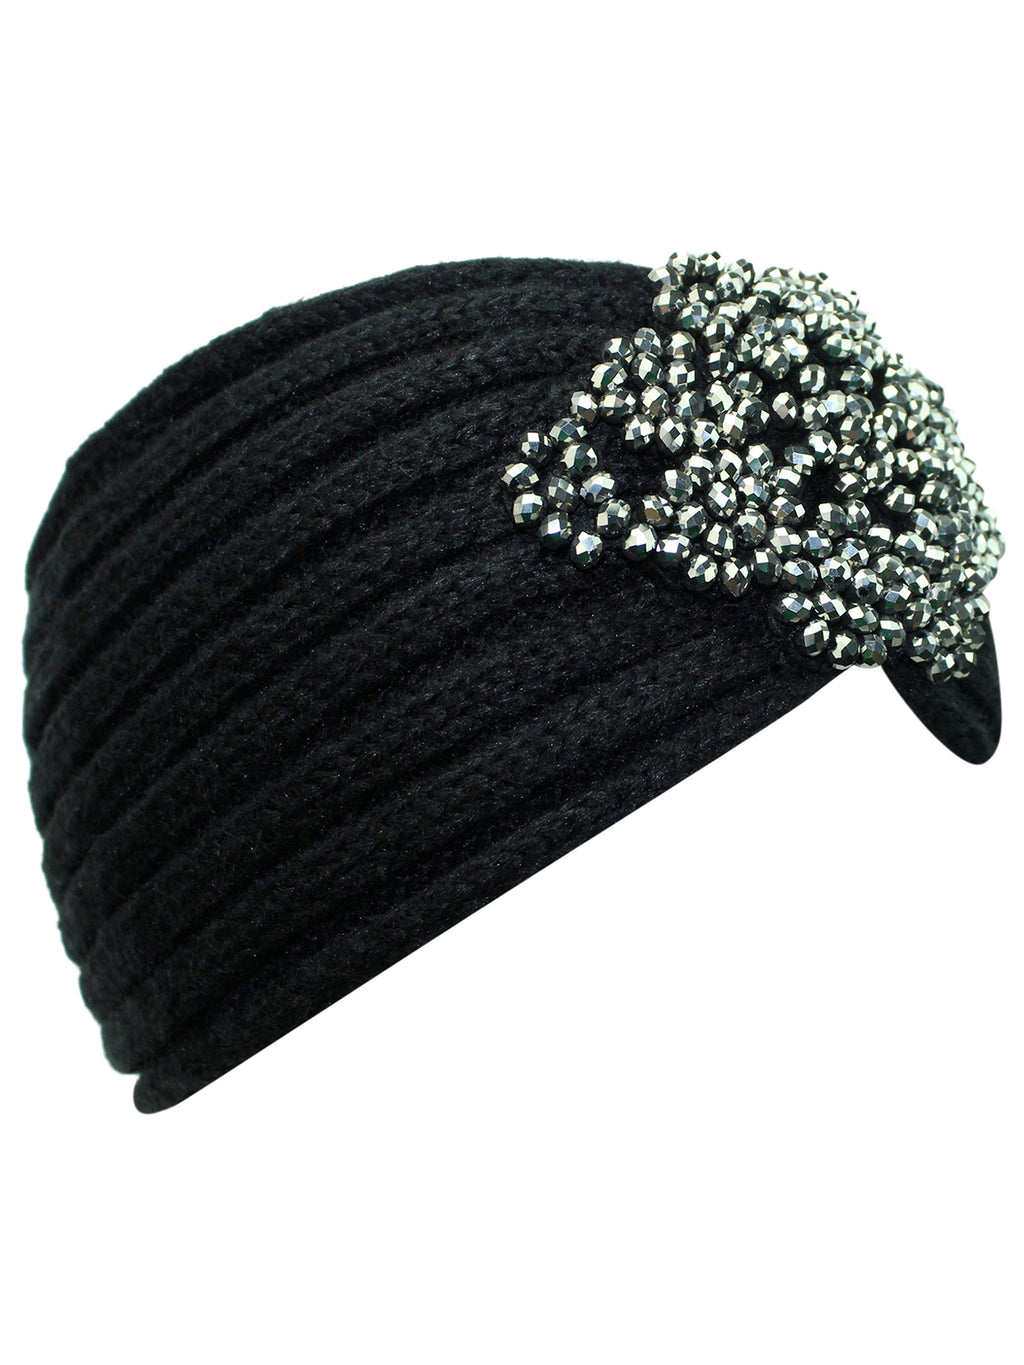 Black Knit Headband With Beaded Detail